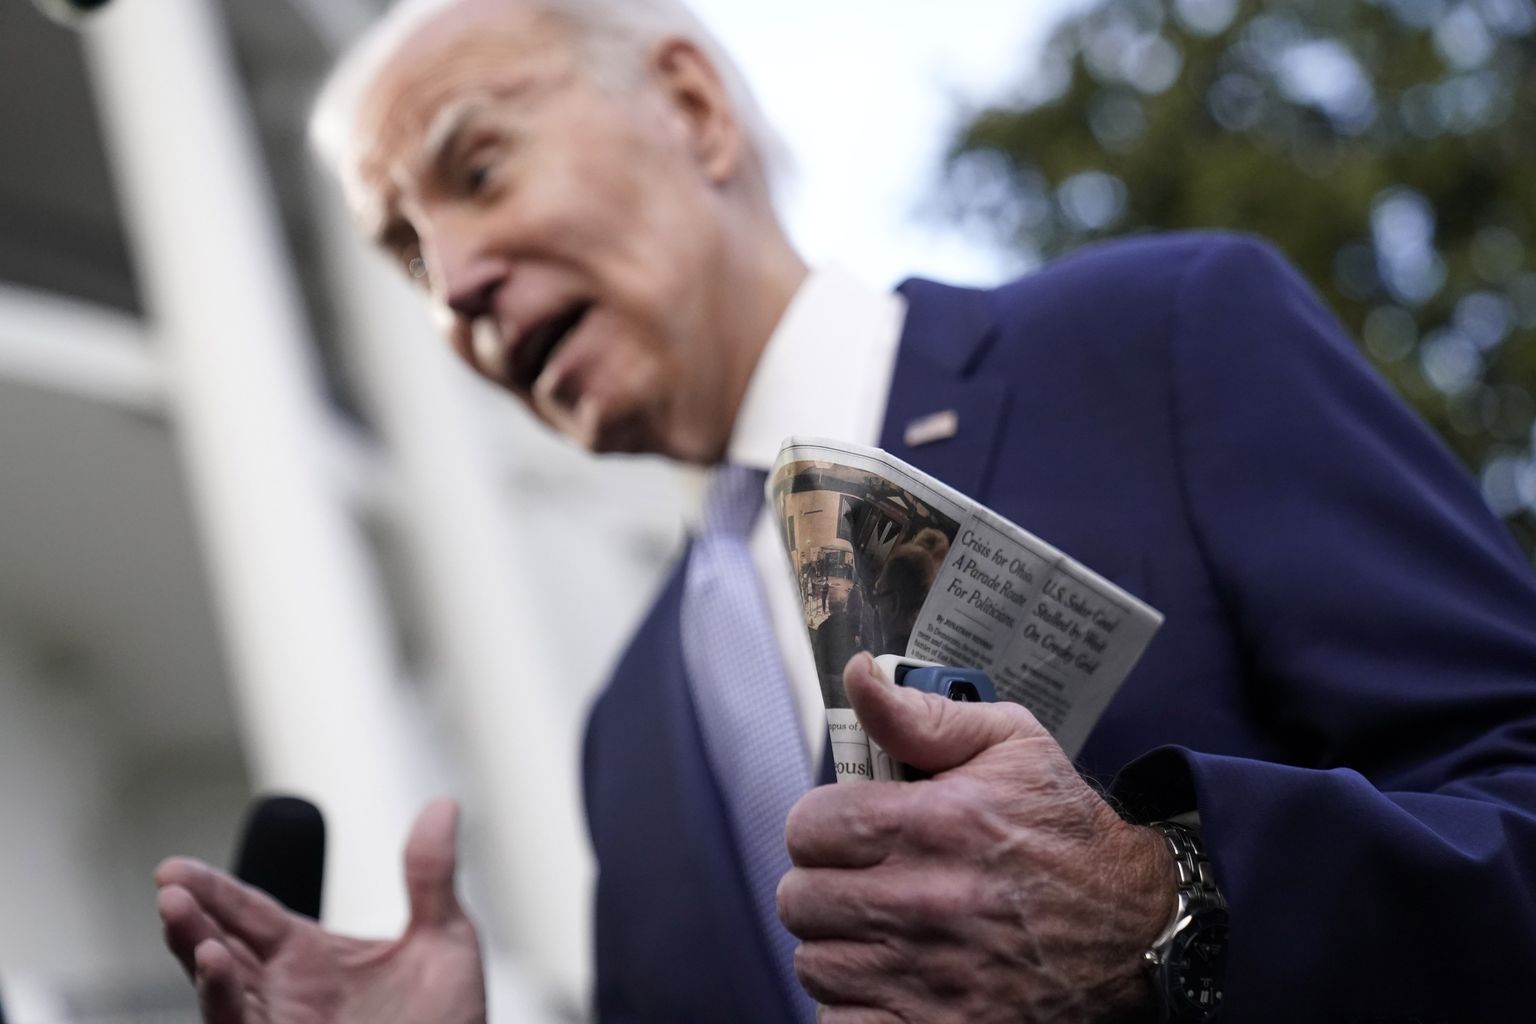 Kahe telefoni ja ajalehega Joe Biden enne kopterile astumist ajakirjanike ees.